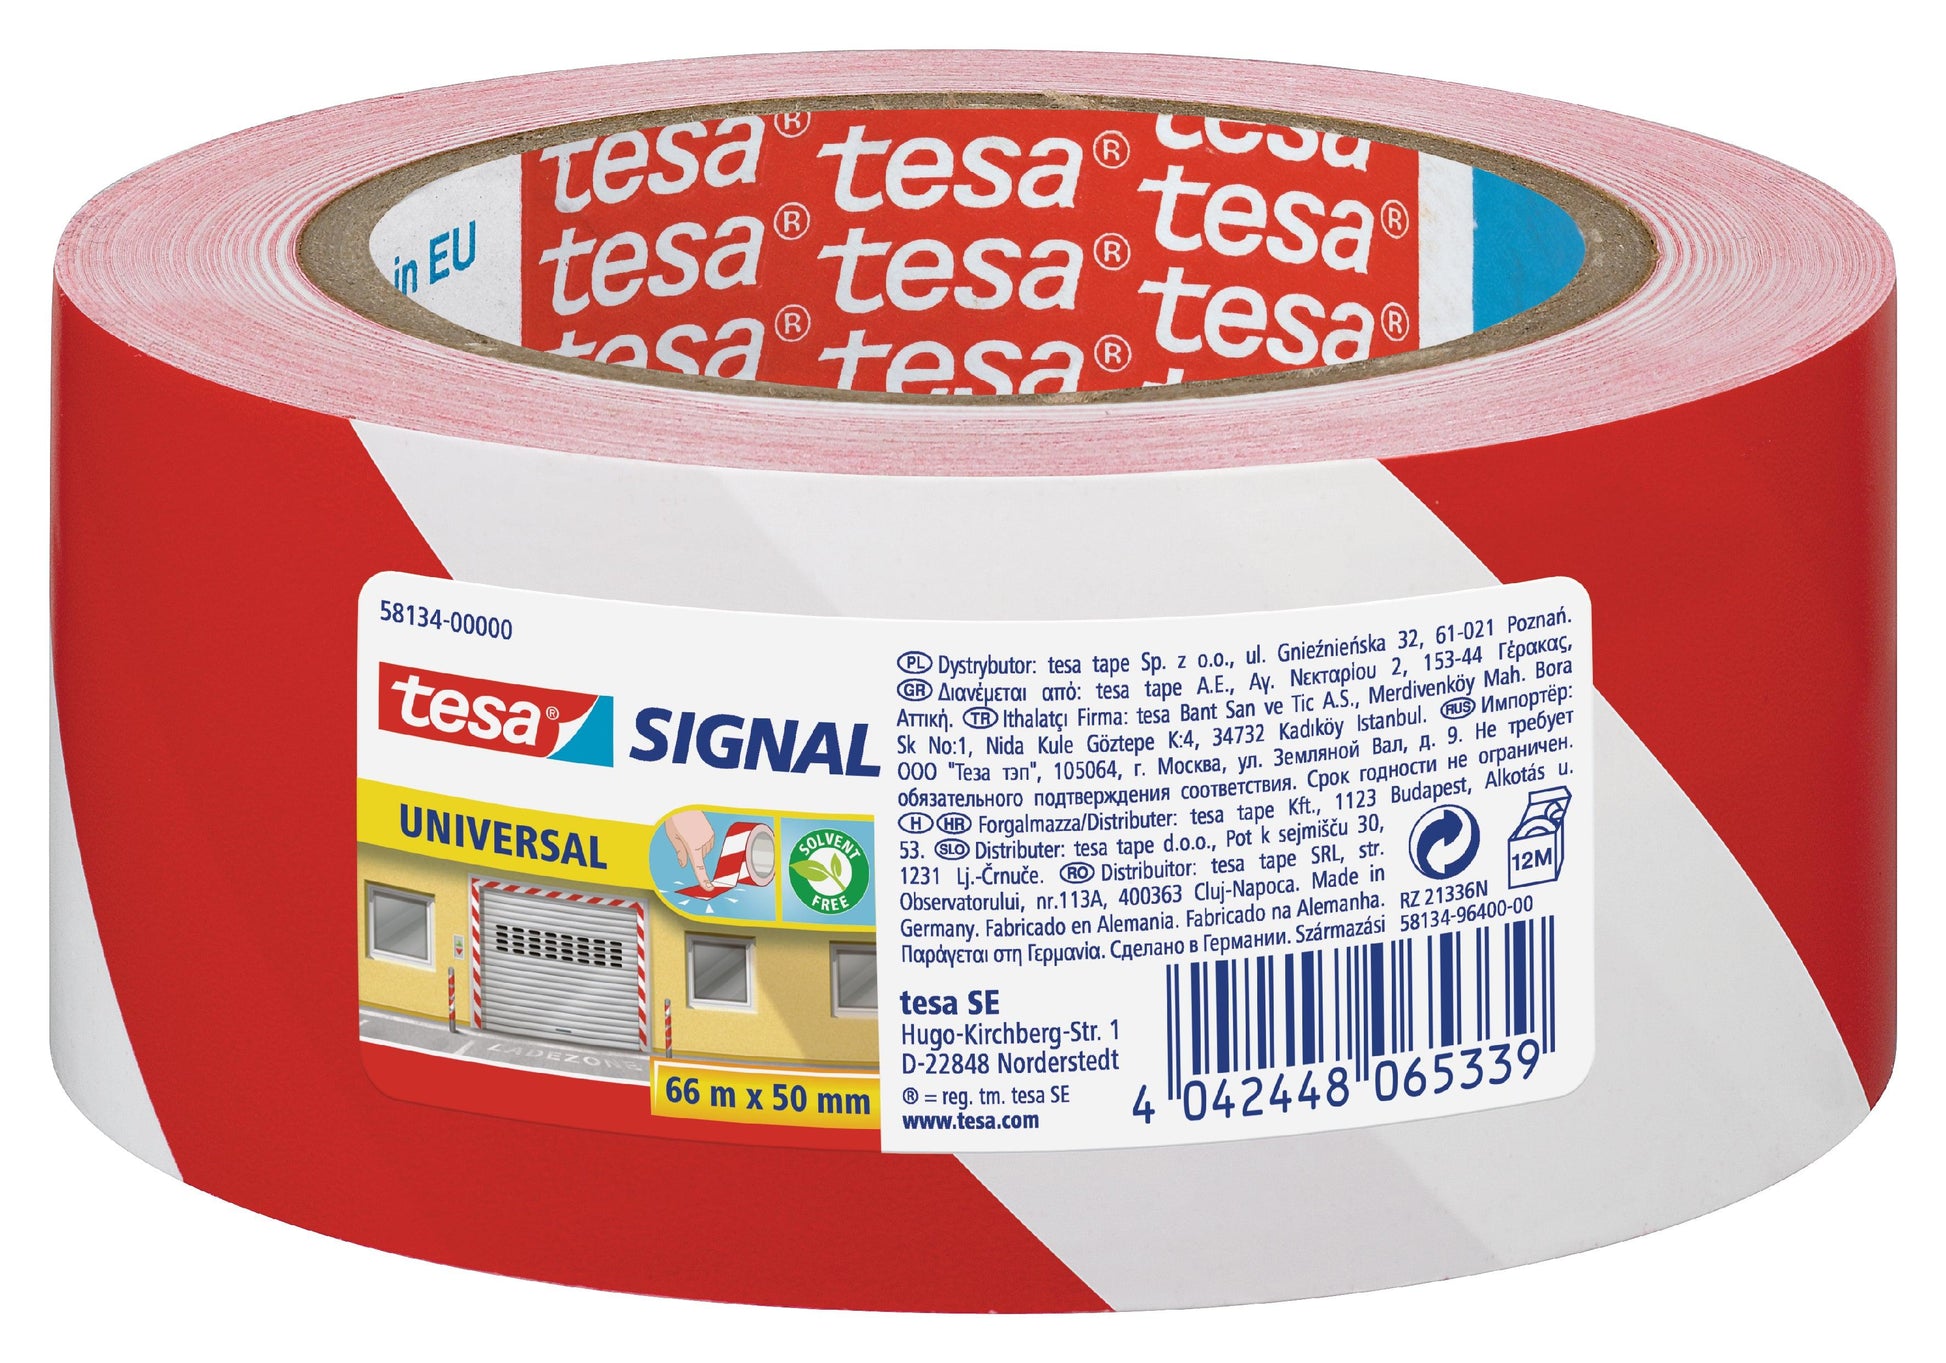 TESA Warning Marking Tape Universal 66m x 50mm Red-White - Premium Hardware from TESA - Just R 158! Shop now at Securadeal